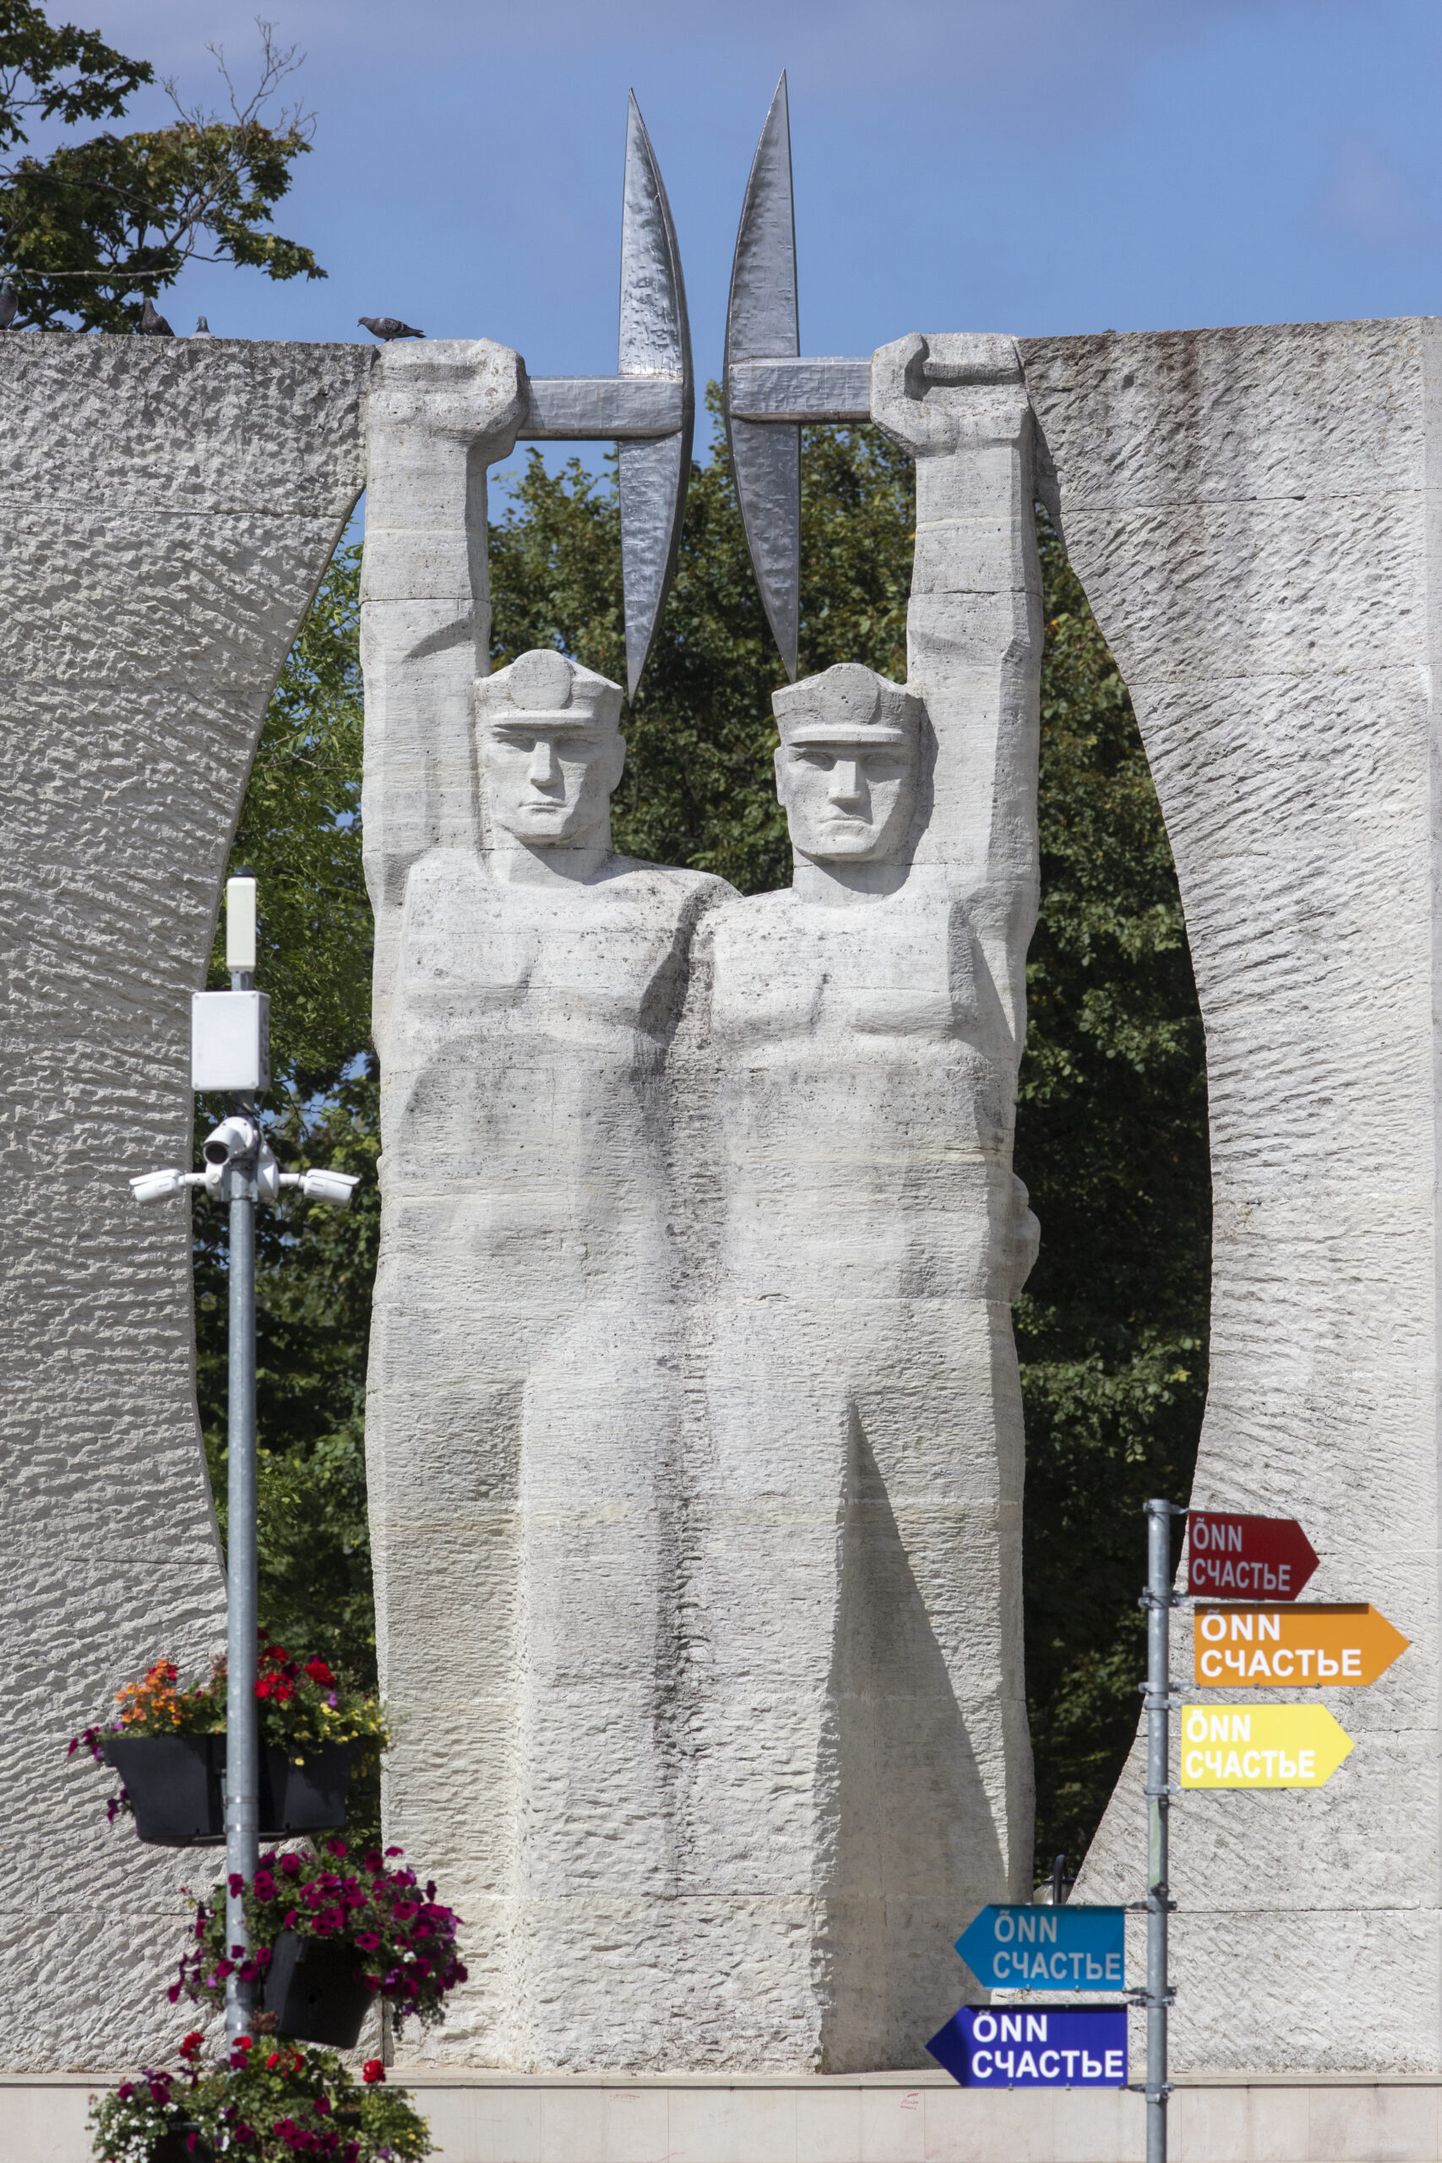 Монумент "Слава труду" в Кохтла-Ярве. Скульпторы Олав Мянни и Удо Иваск.